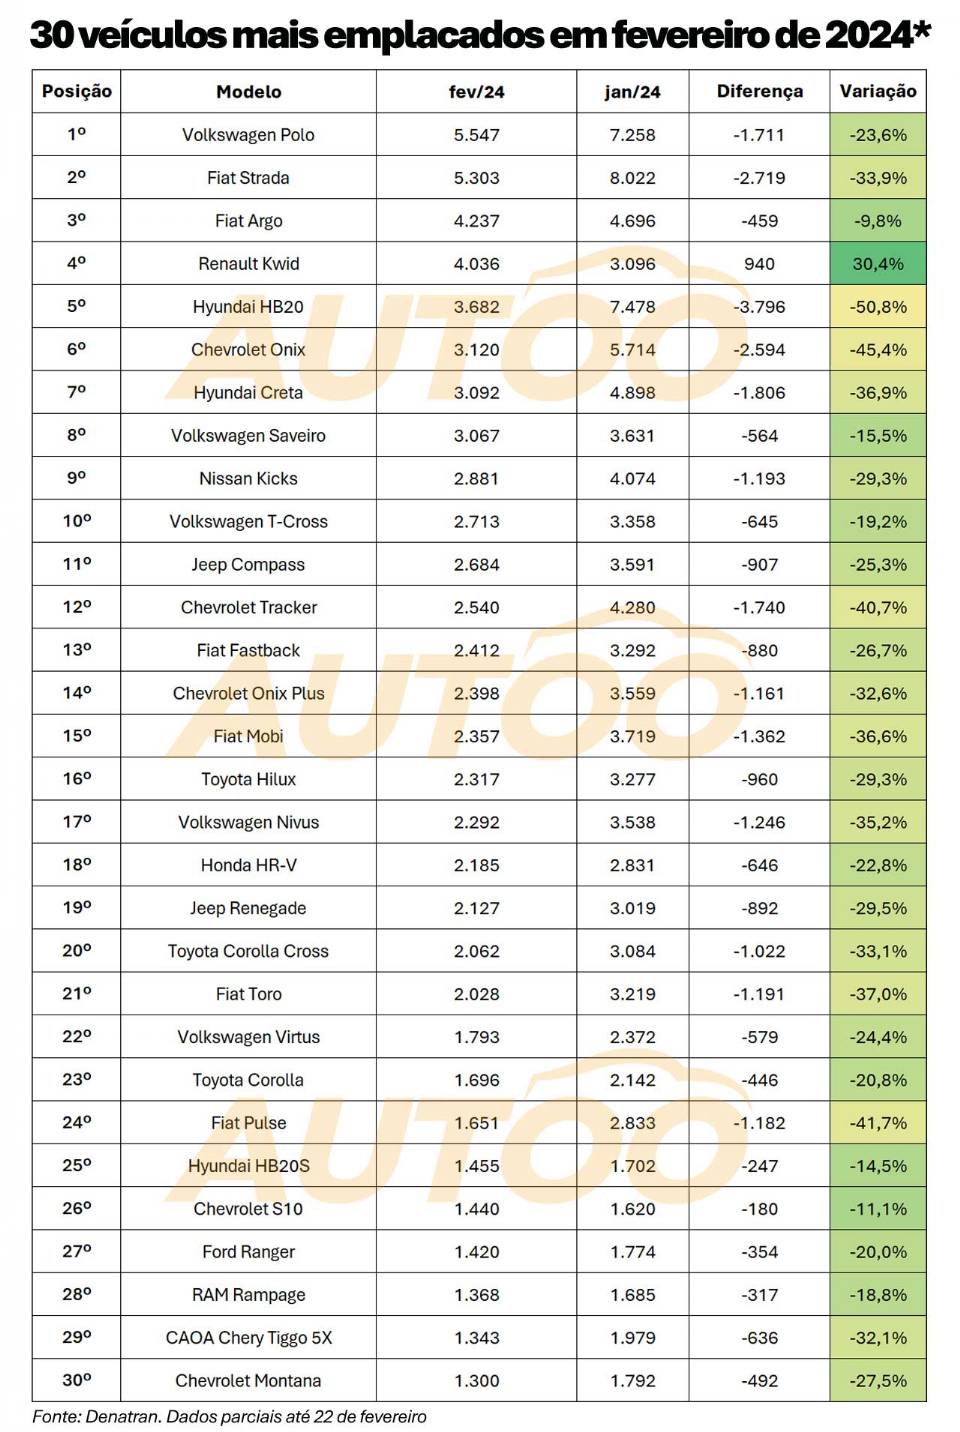 O VW Polo lidera o ranking provisório de fevereiro